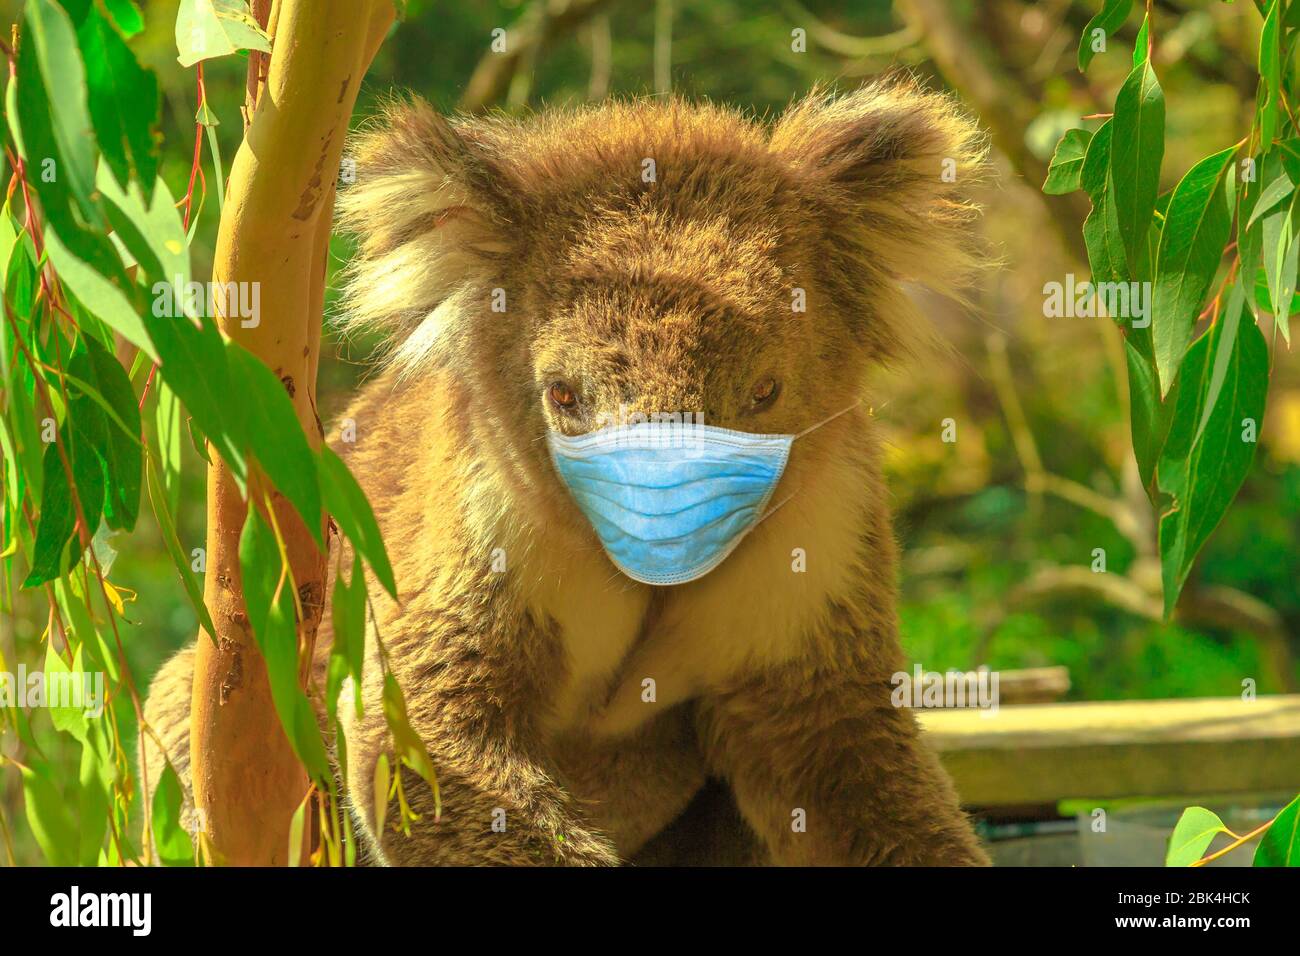 Infezione da COVID-19 negli animali. Orso koala con maschera chirurgica del viso nella foresta di eucalipti a Phillip Island a Victoria, Australia. Rappresentazione di Foto Stock